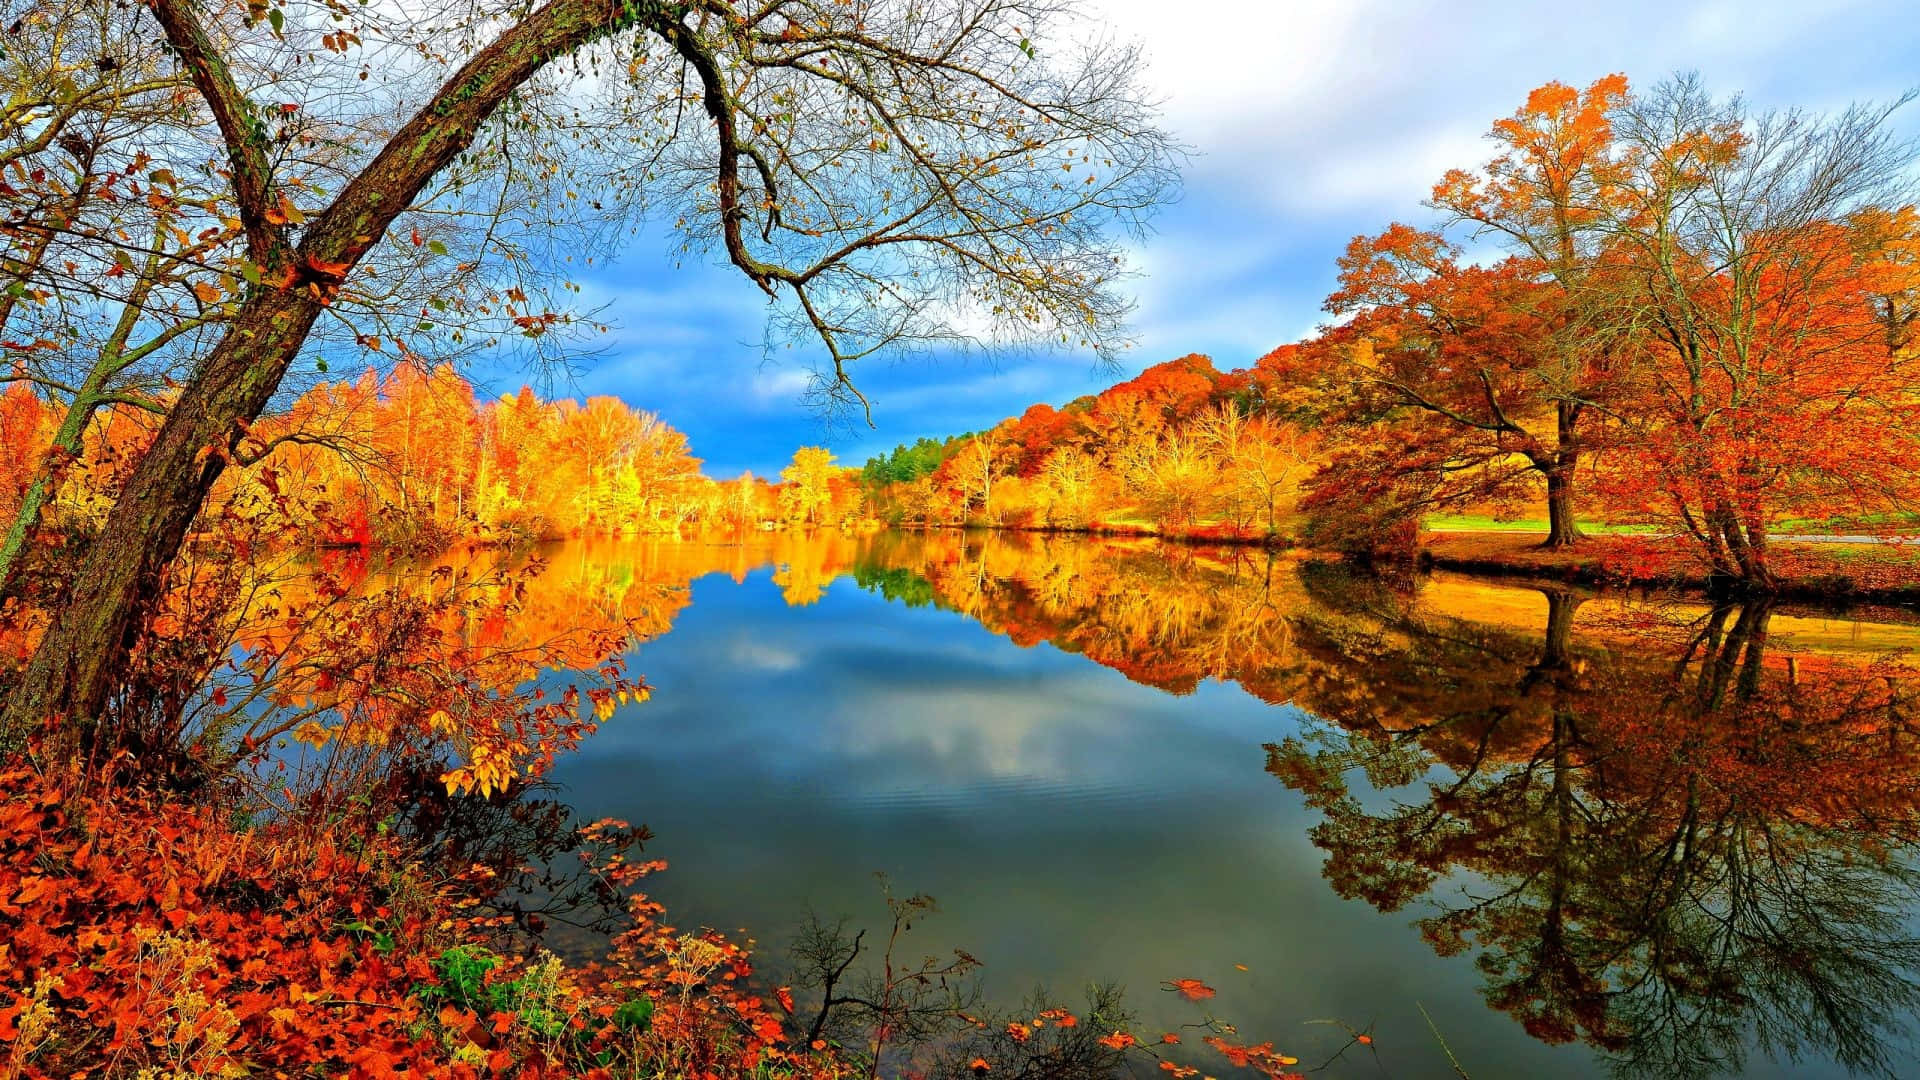 Download Serene Fall Lake Scenery Wallpaper | Wallpapers.com